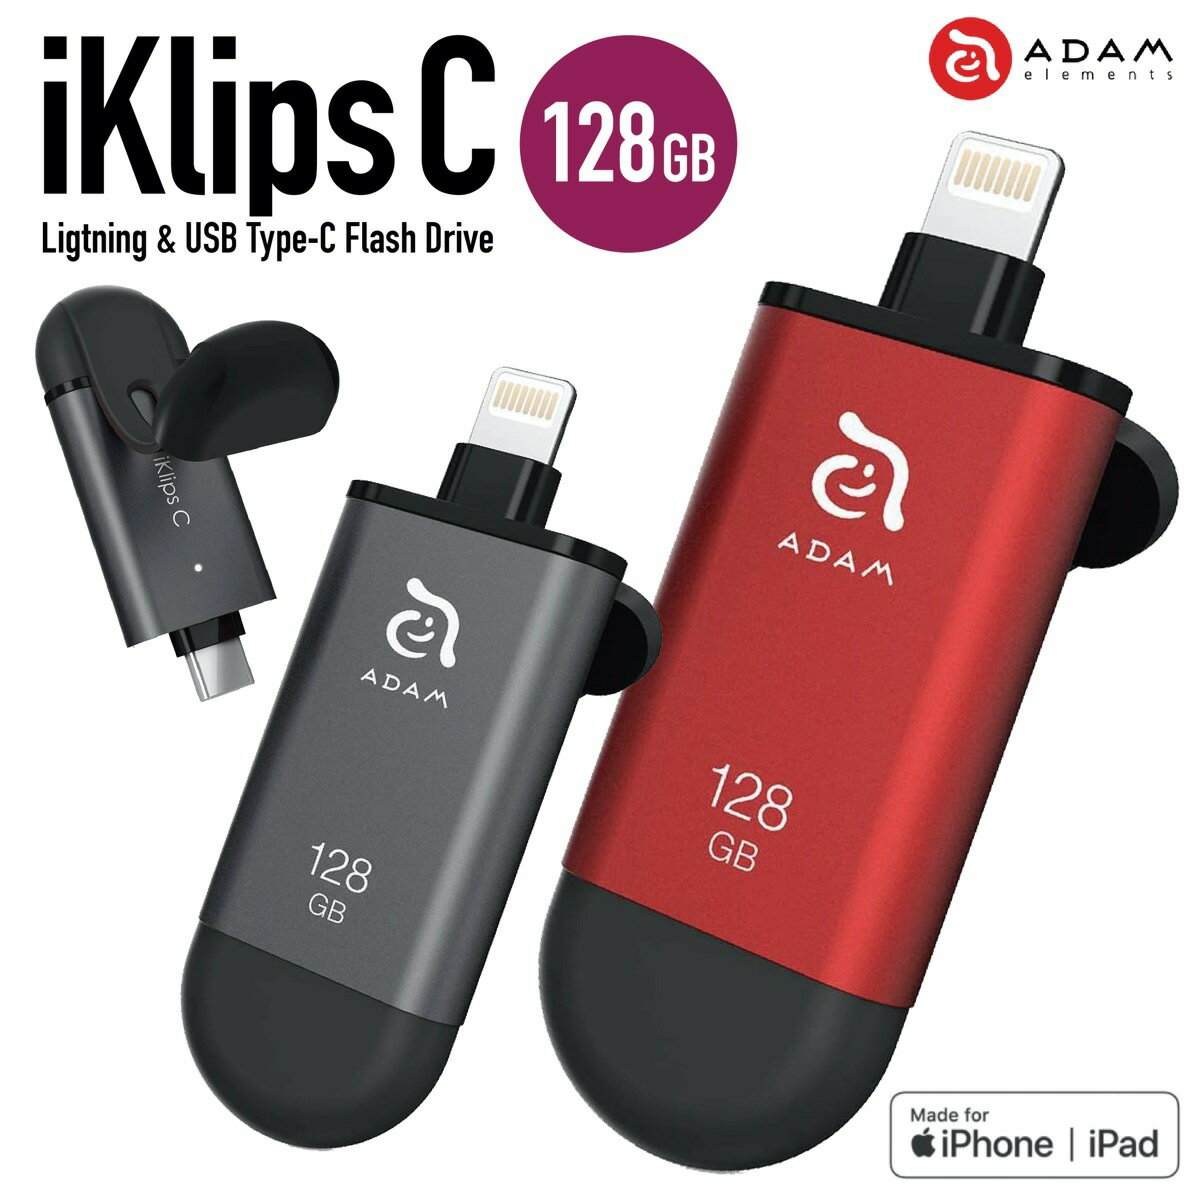 ADAM elements iKlips C 128GB Lightning USBメモリ USB Type-C iPhone iPad MFi認証 Android アンドロイド ライトニング 簡単 バックアップ 拡張 アイクリプス アダムエレメンツ (3C)iKlips C 128GB